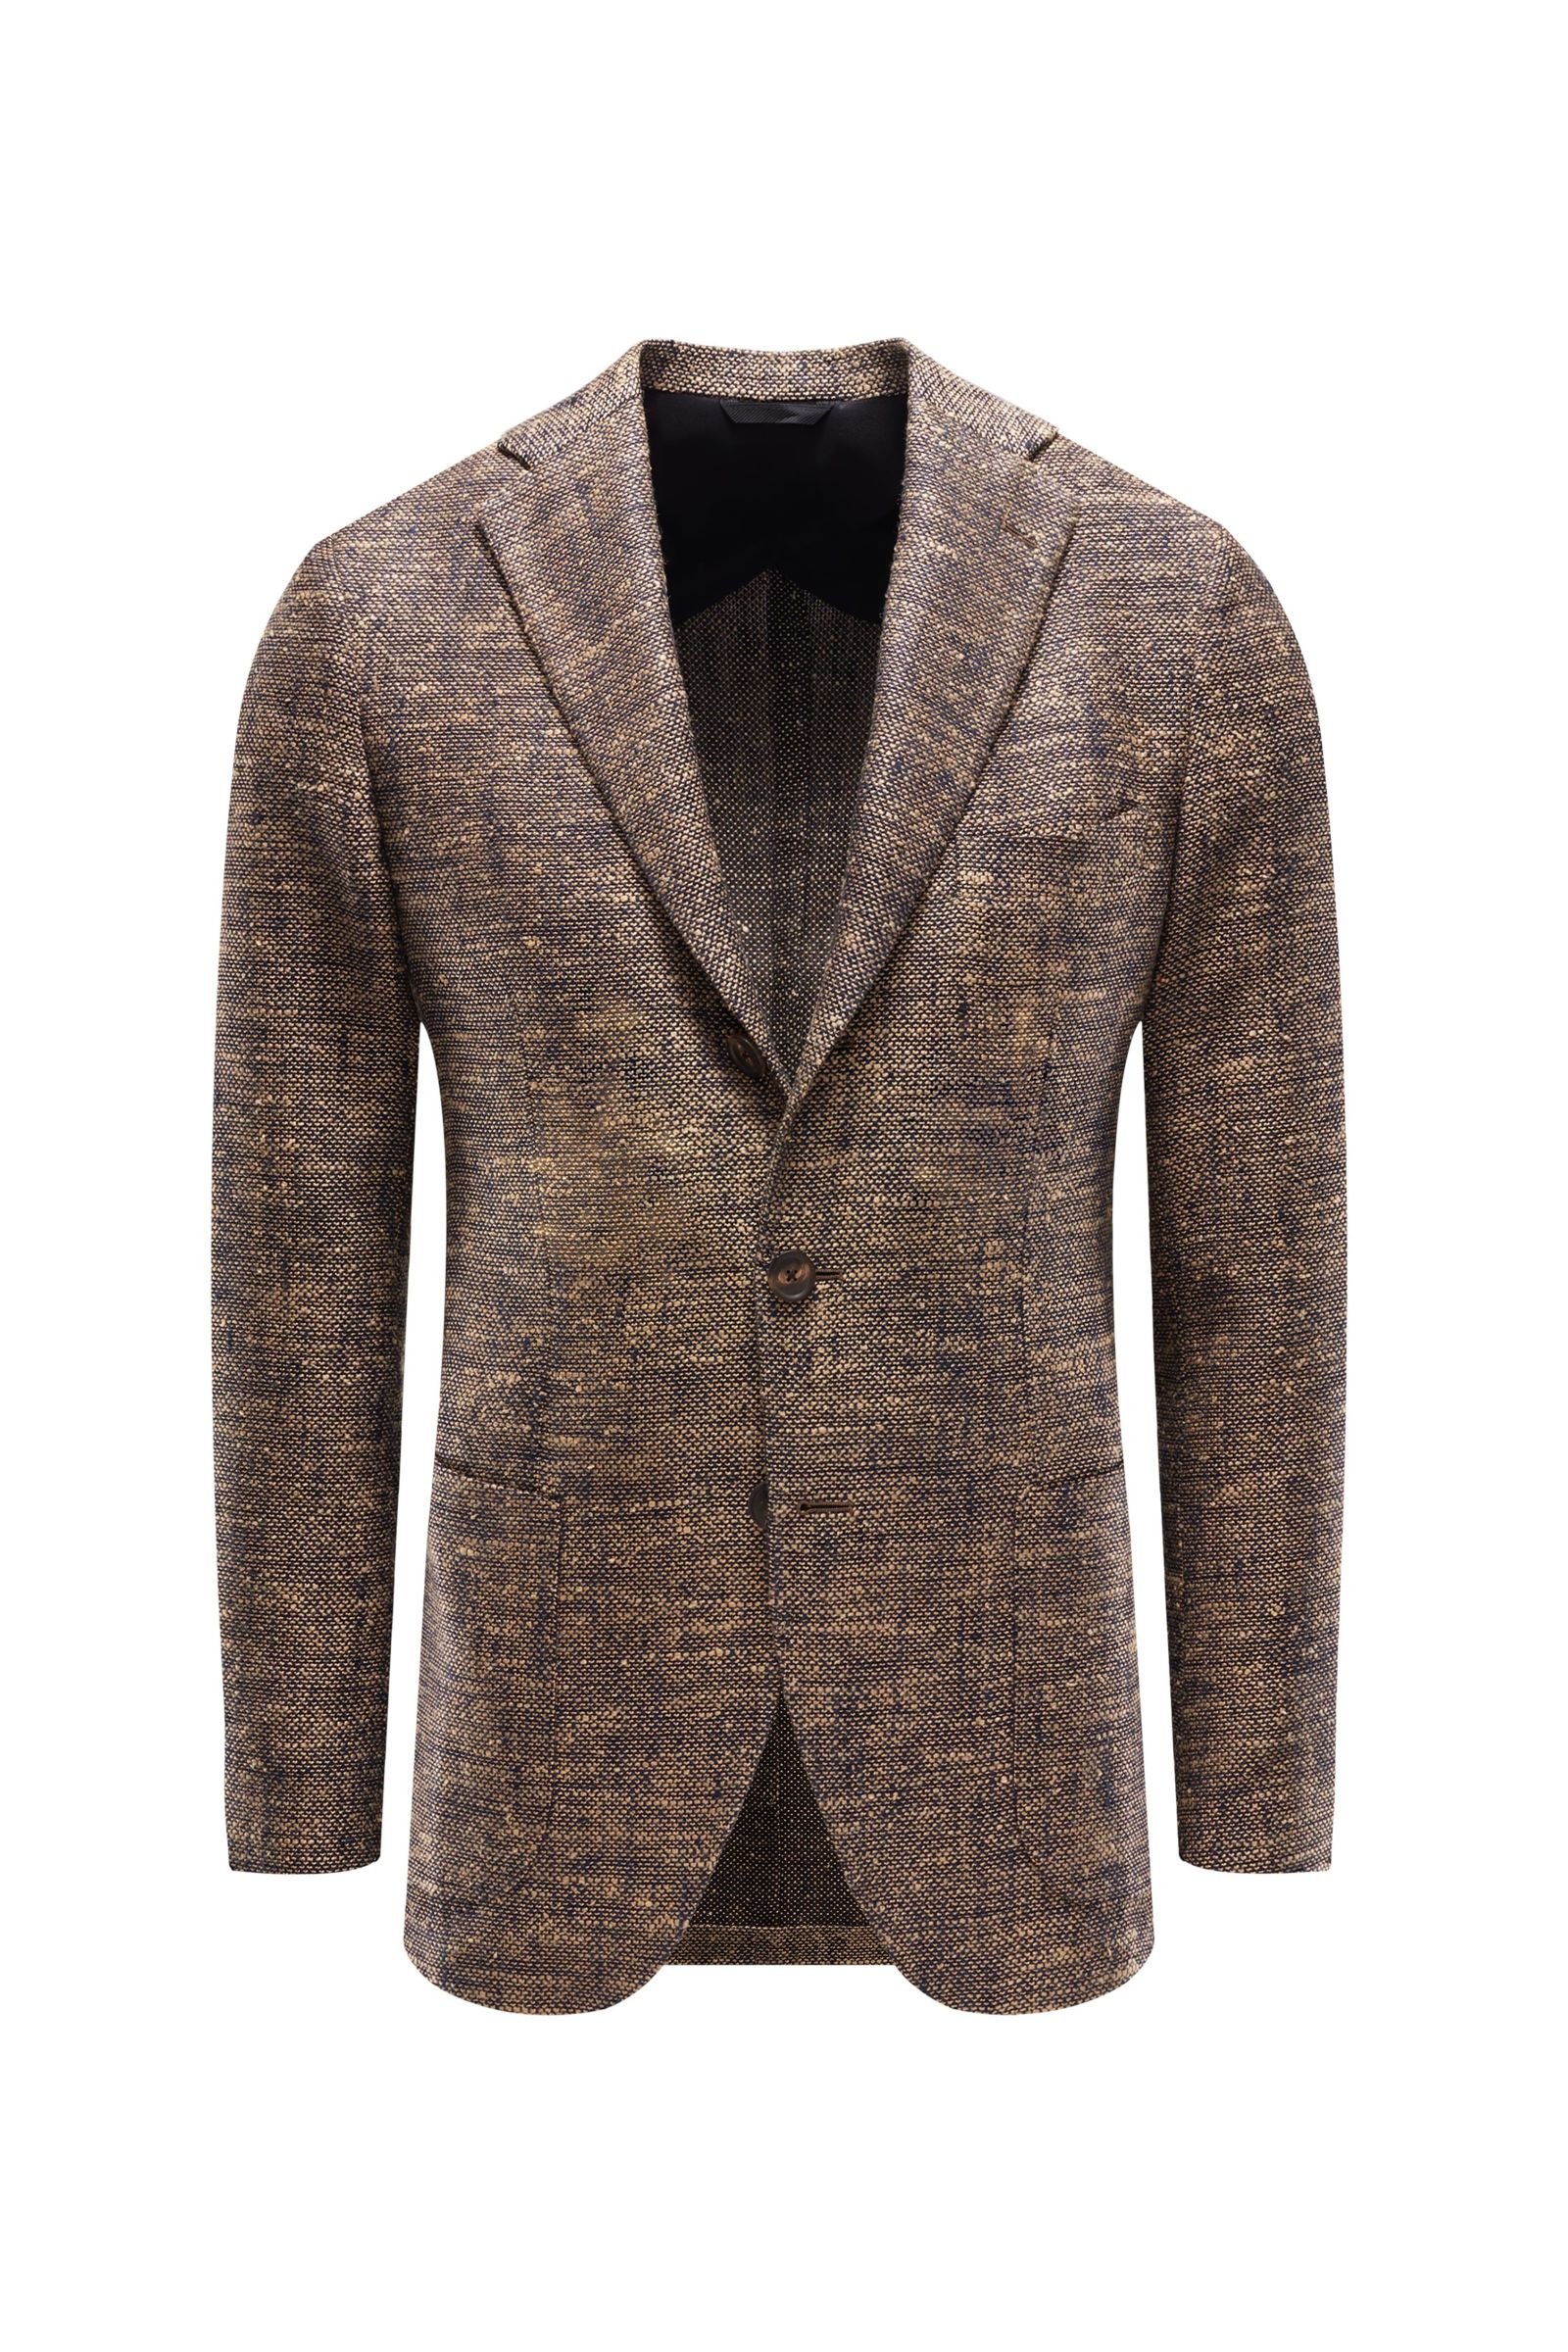 Smart-casual jacket 'Aanzio' light brown